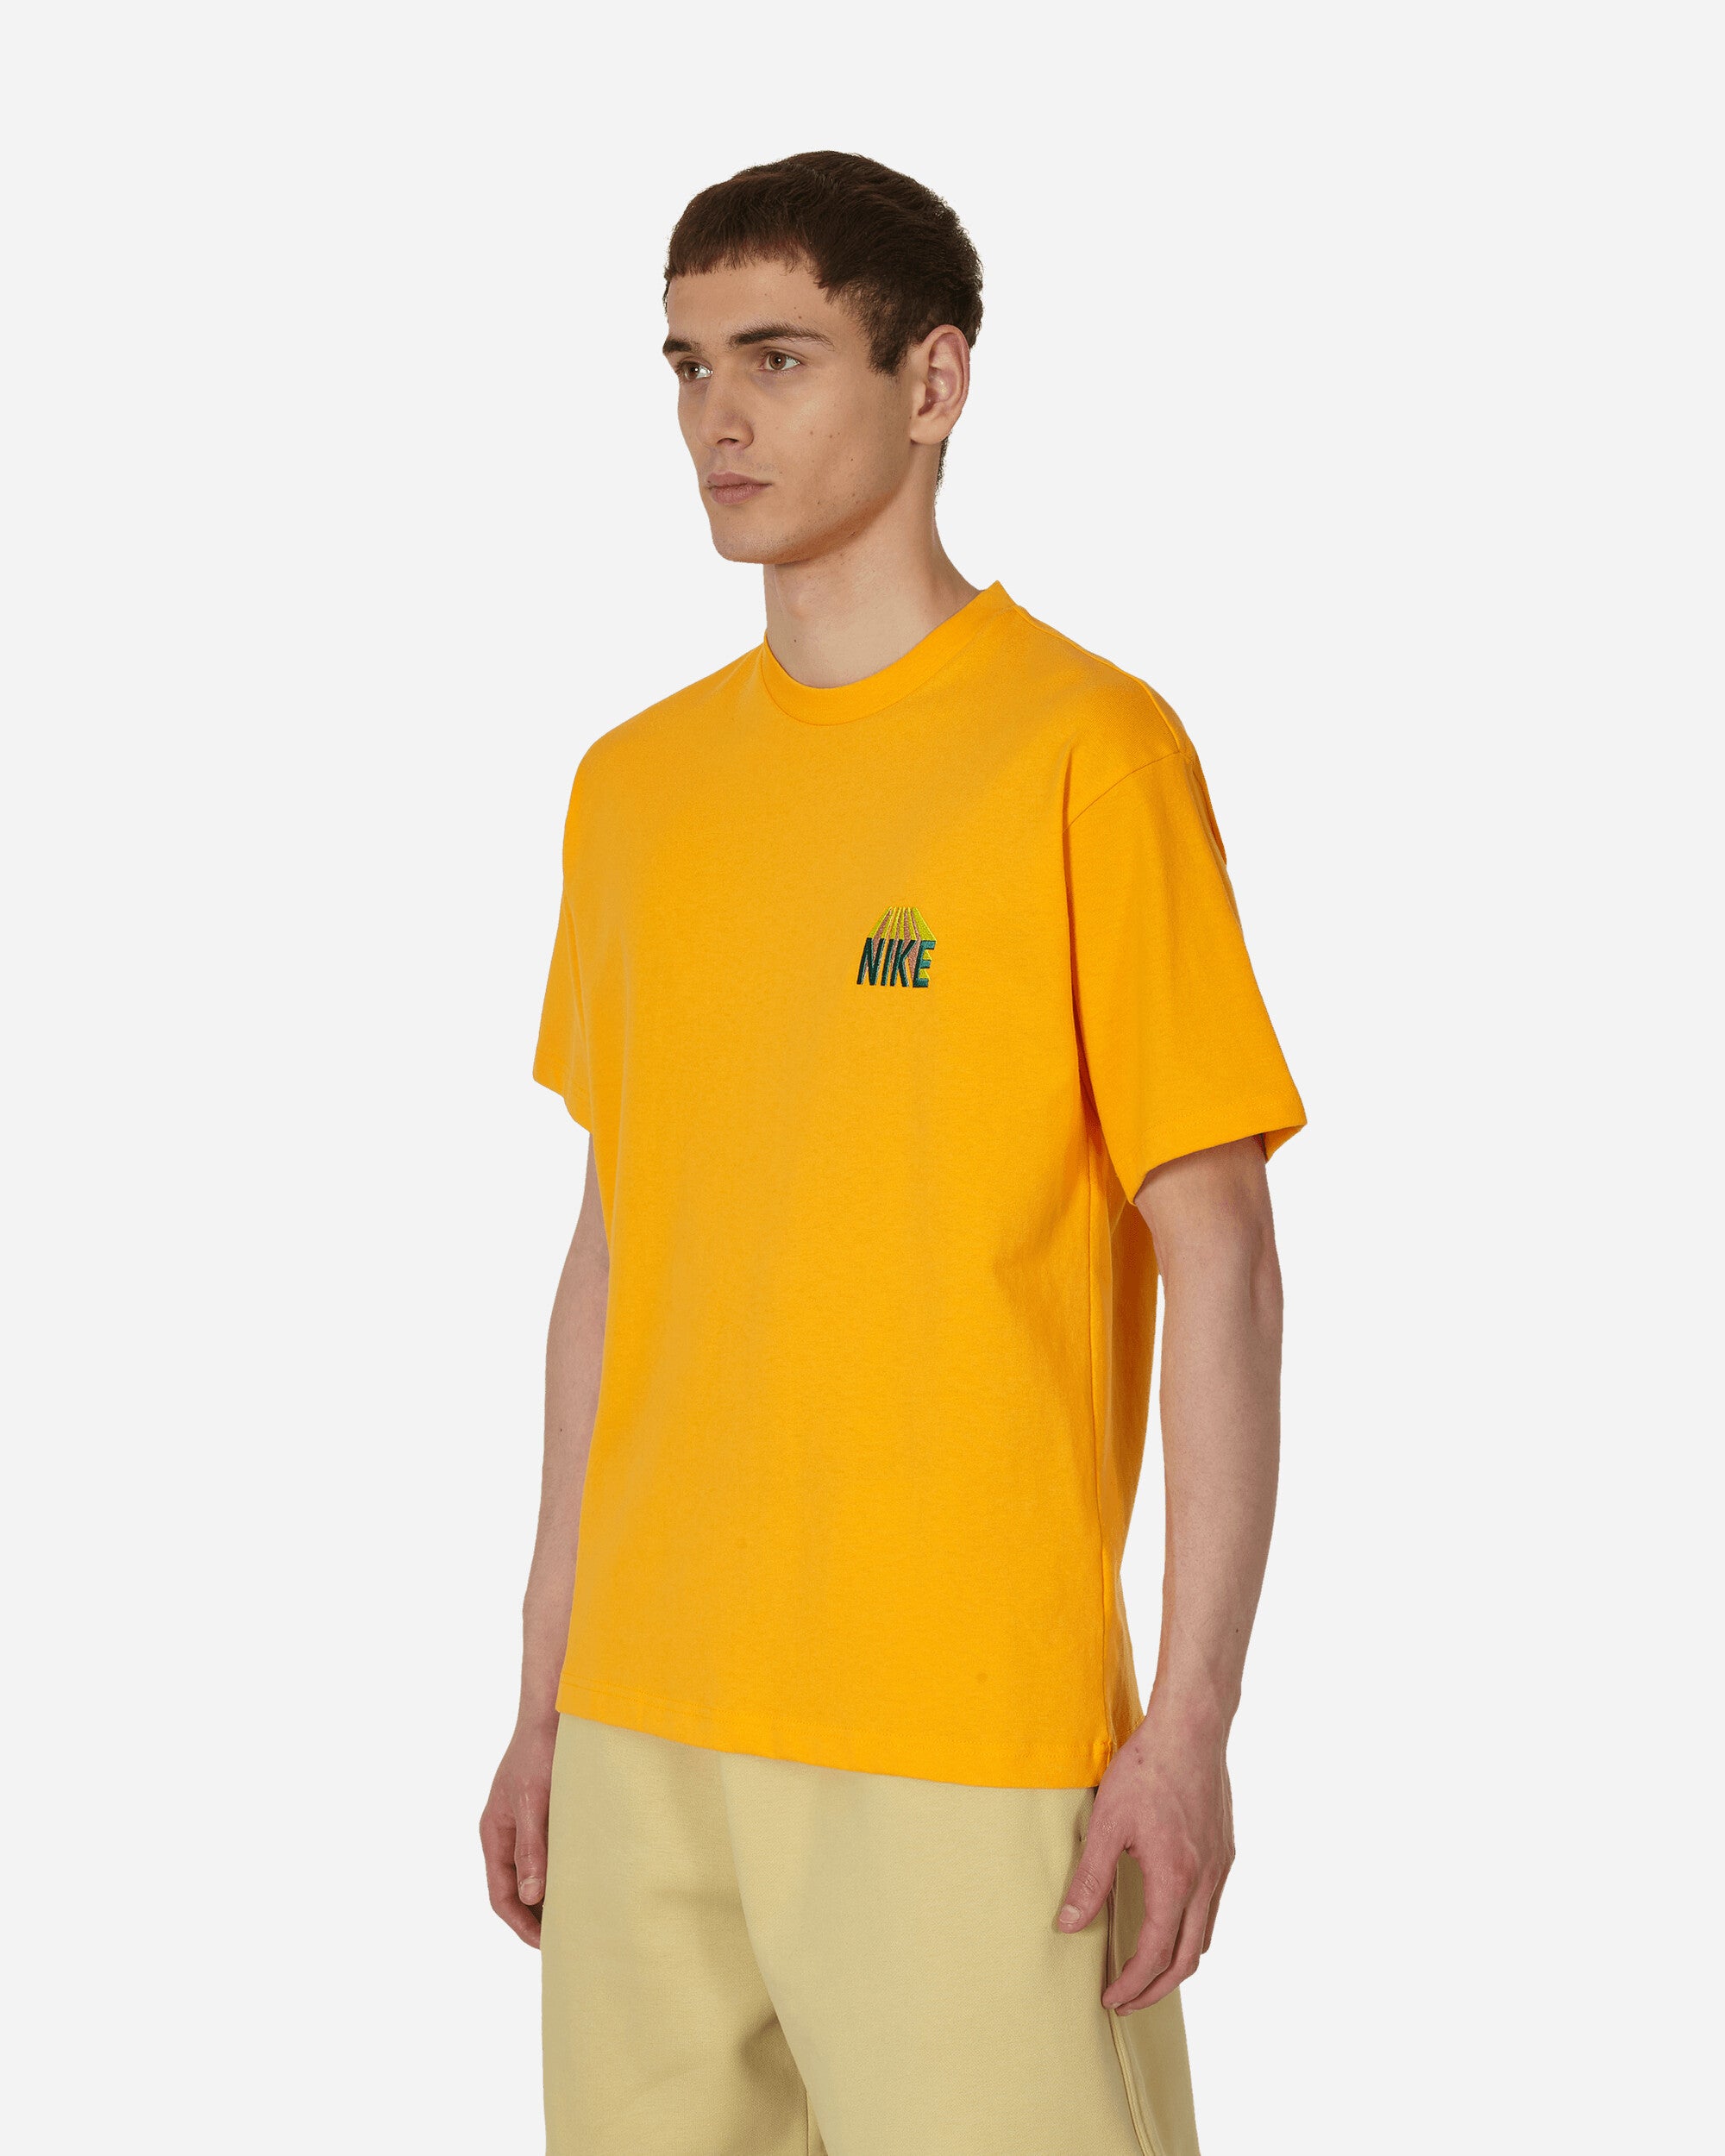 Nike Sunset T-Shirt Sundial - Slam Jam Official Store